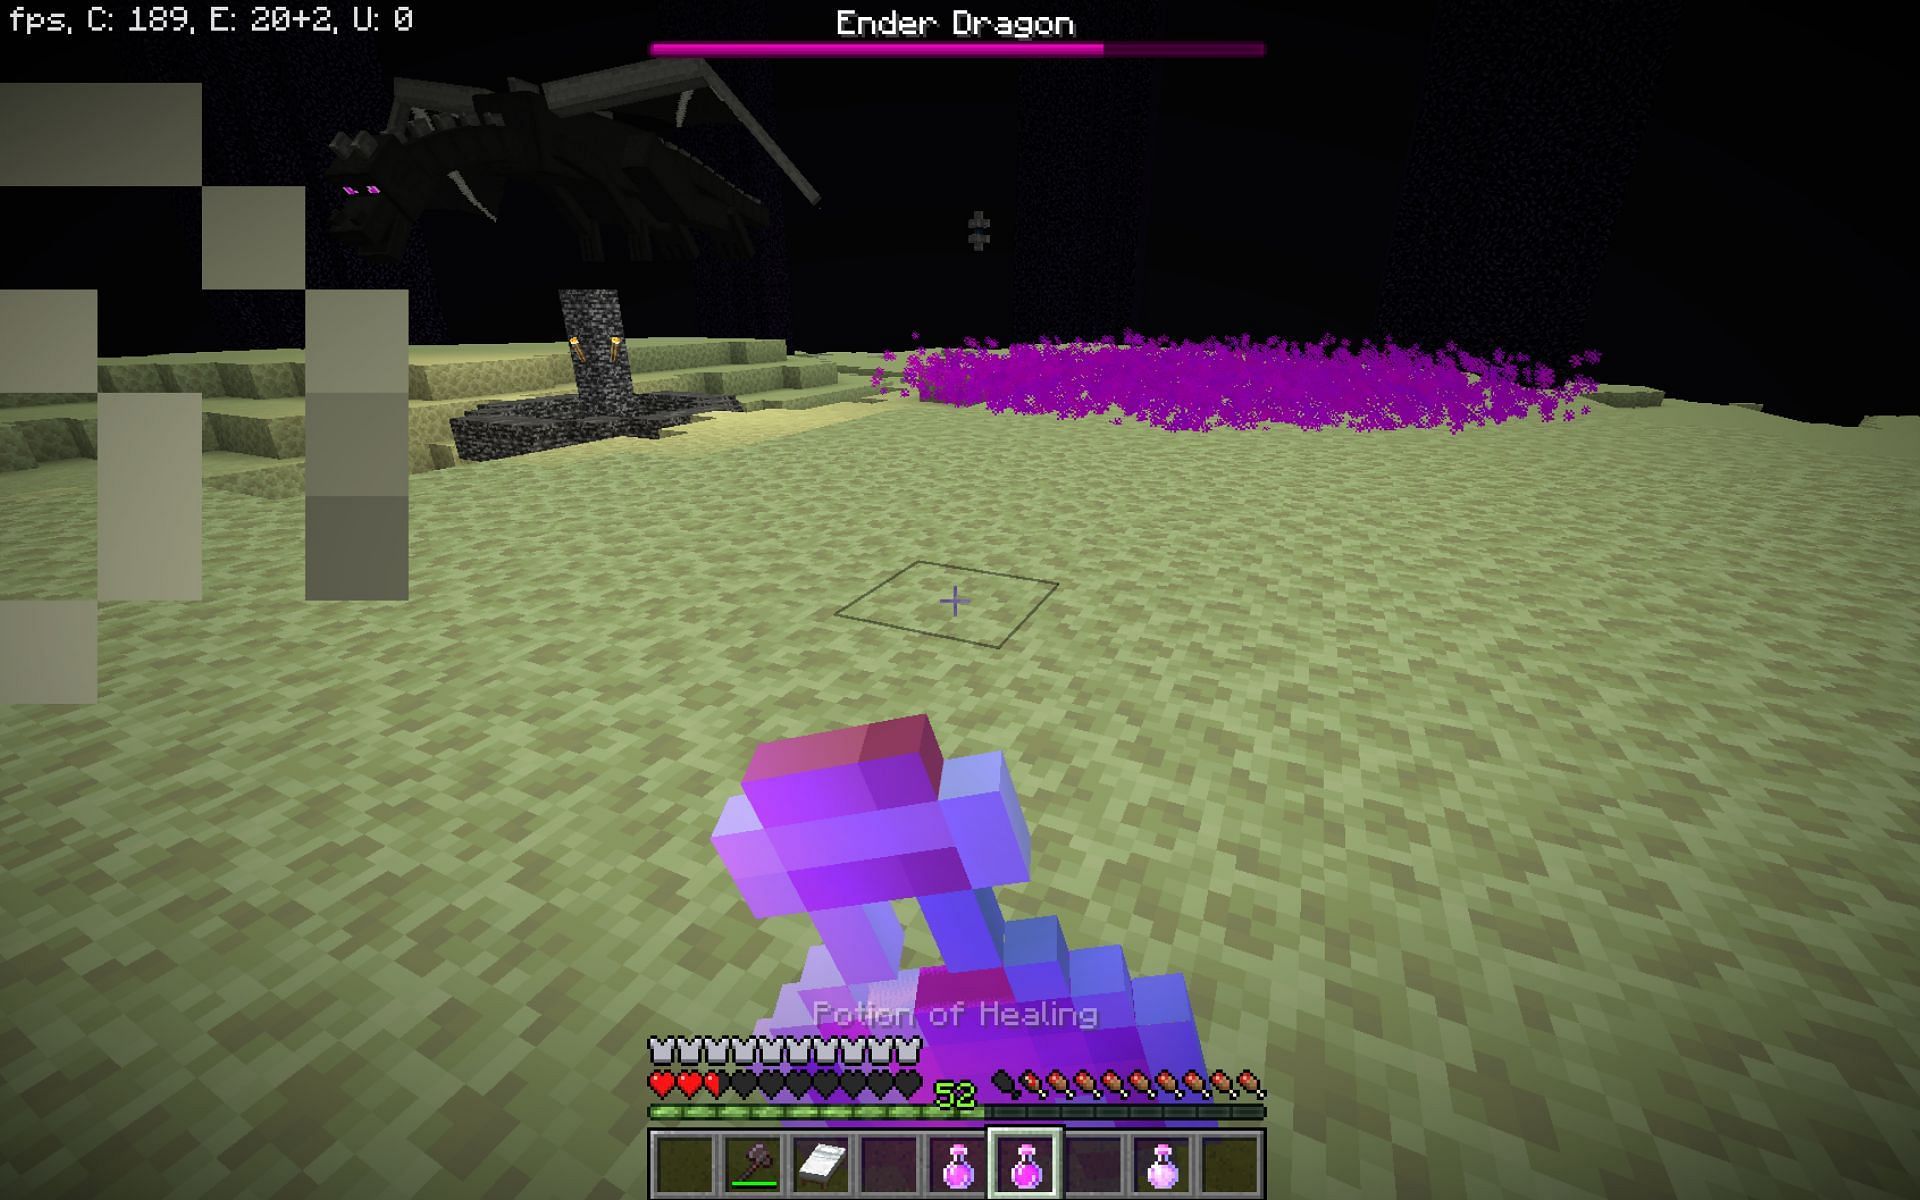 Dragon&#039;s breath in purple particles (Image via Minecraft 1.19)